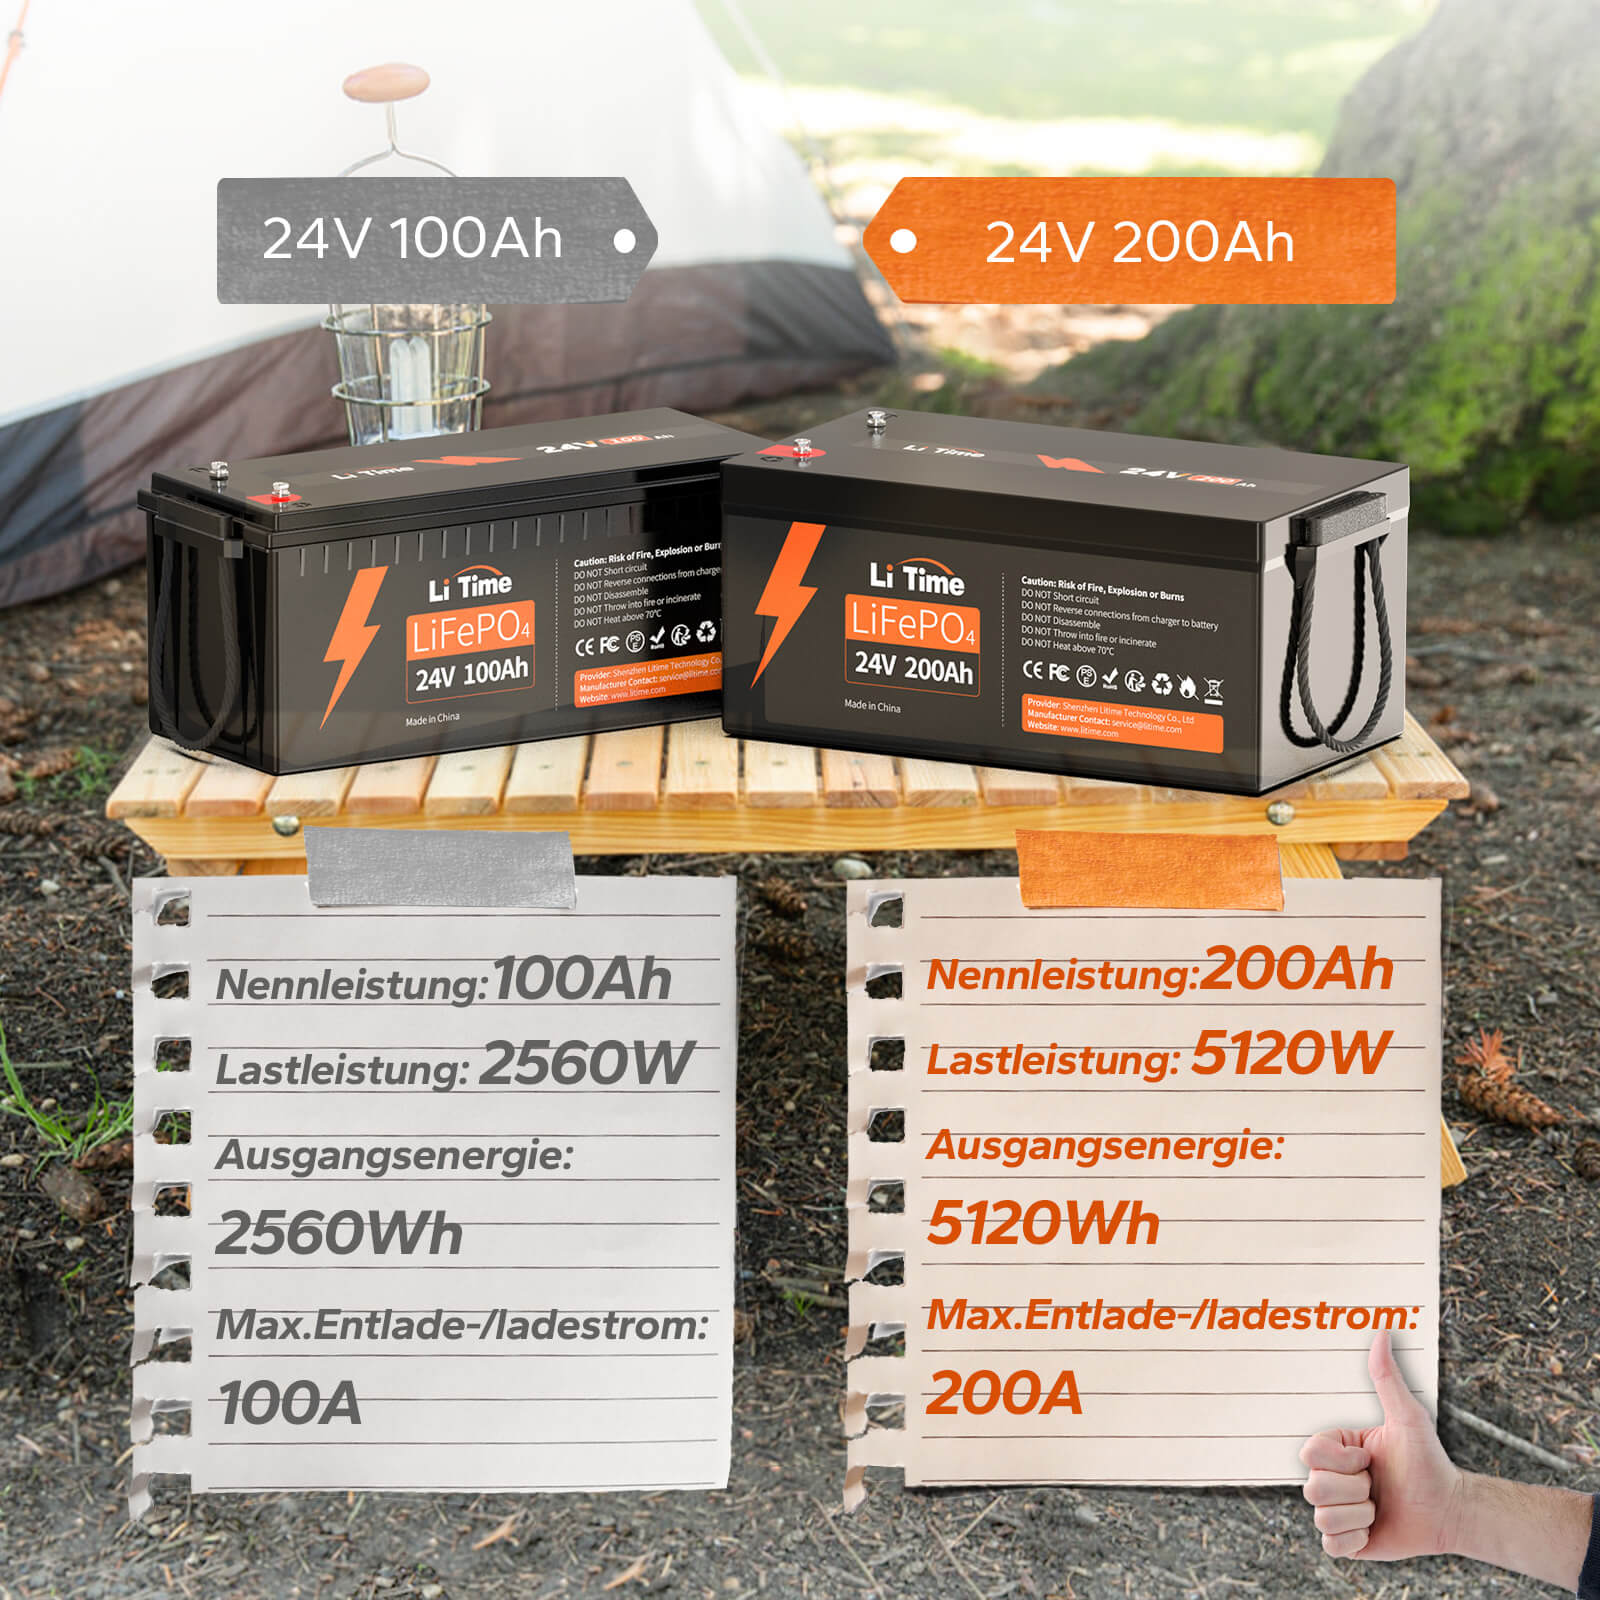 LiTime 24V 200Ah Lithium-Batterie kann 4000~15000 Zyklen laufen, was mehr als 10 Mal zu Blei-Säure mit 200~500 Zyklen ist. 24V LiFePO4 Batterie kann 100% SOC&DOD realisieren und hat 10 Jahre Lebensdauer